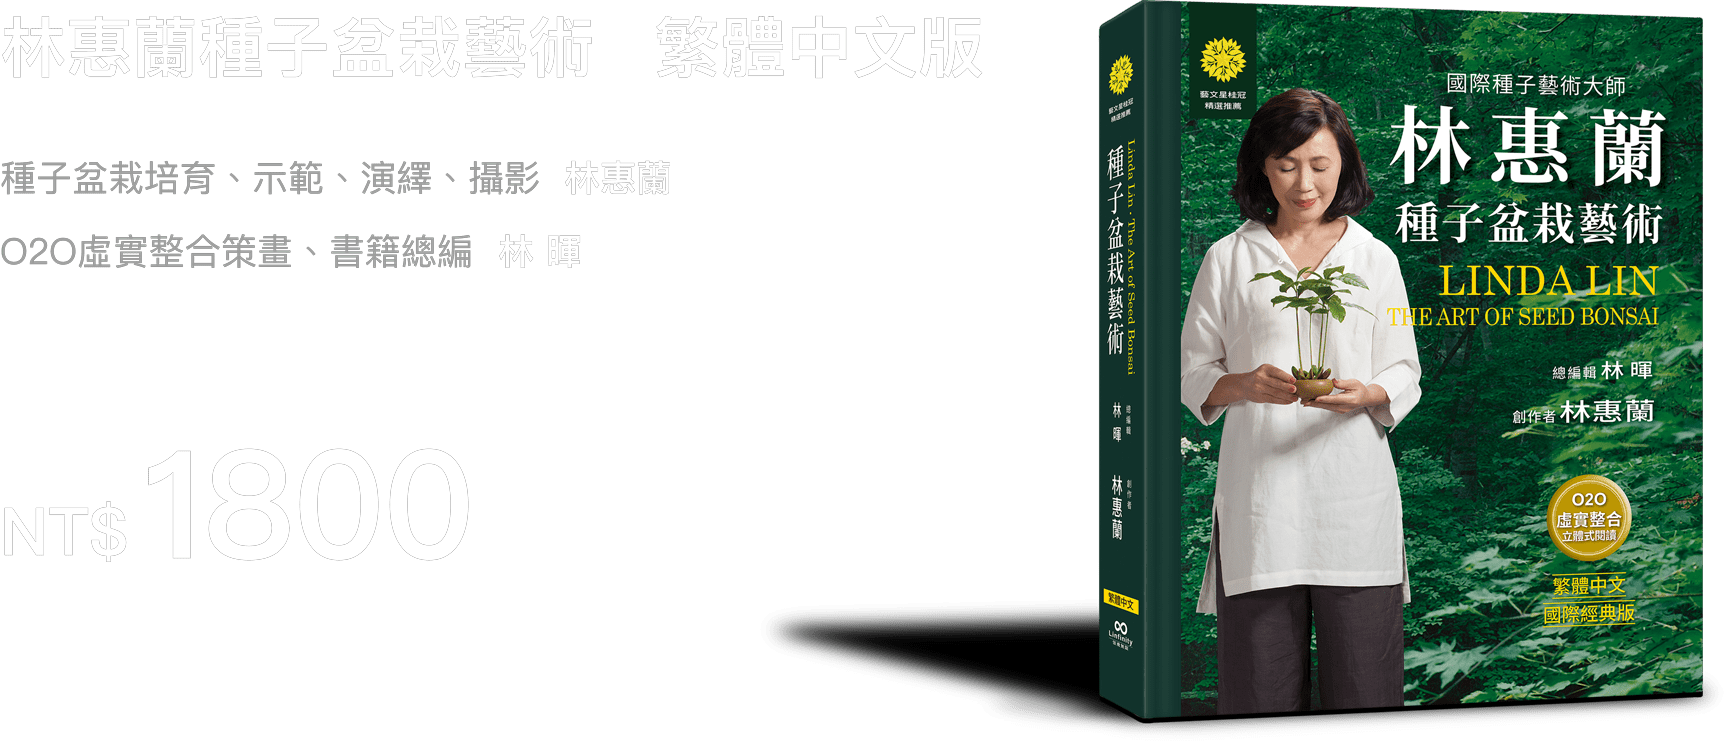 林惠蘭種子盆栽藝術繁體中文版售價1800元